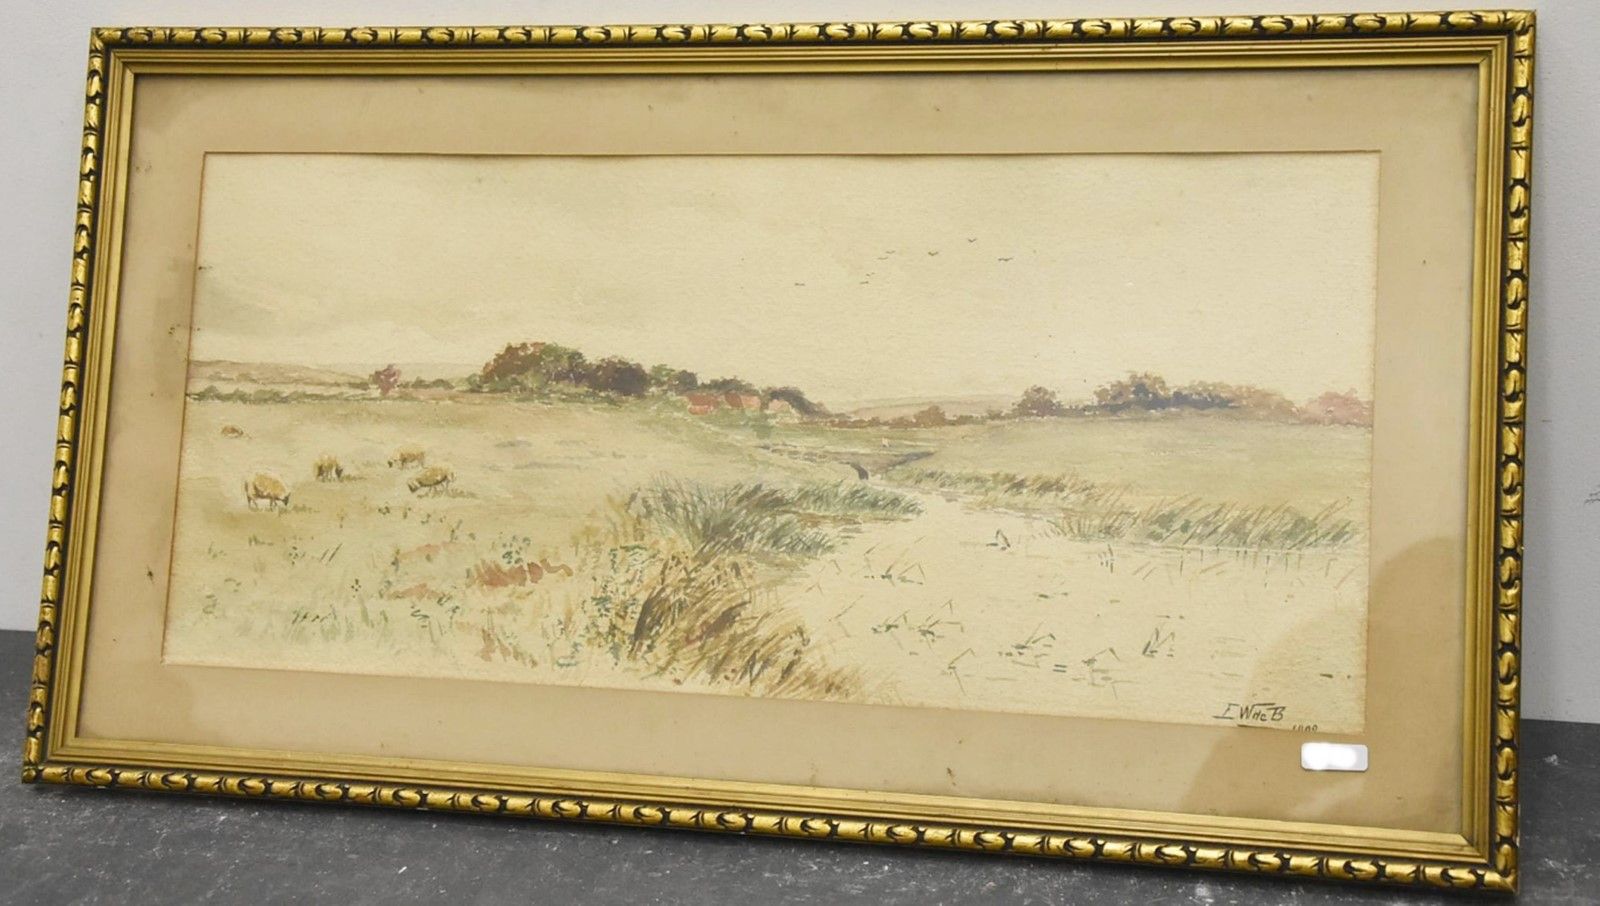 Null "有羊的沙丘风景"，水彩画，有 EW de B 字样，1909 年，约 24 x 53 厘米，玻璃后装裱